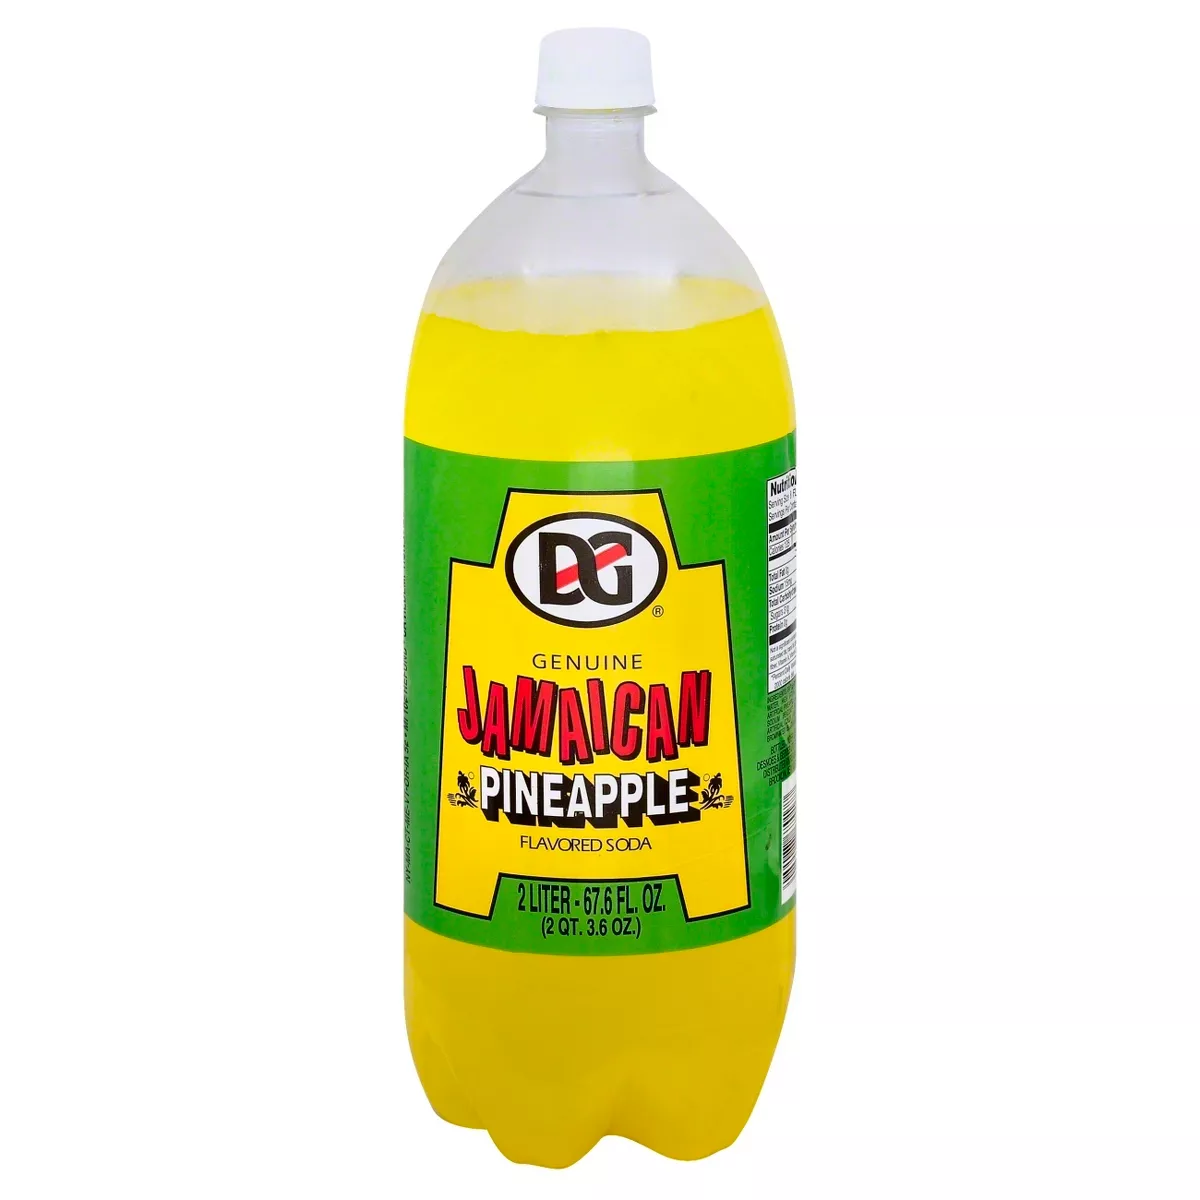 D&G Pineapple, 2-Liter